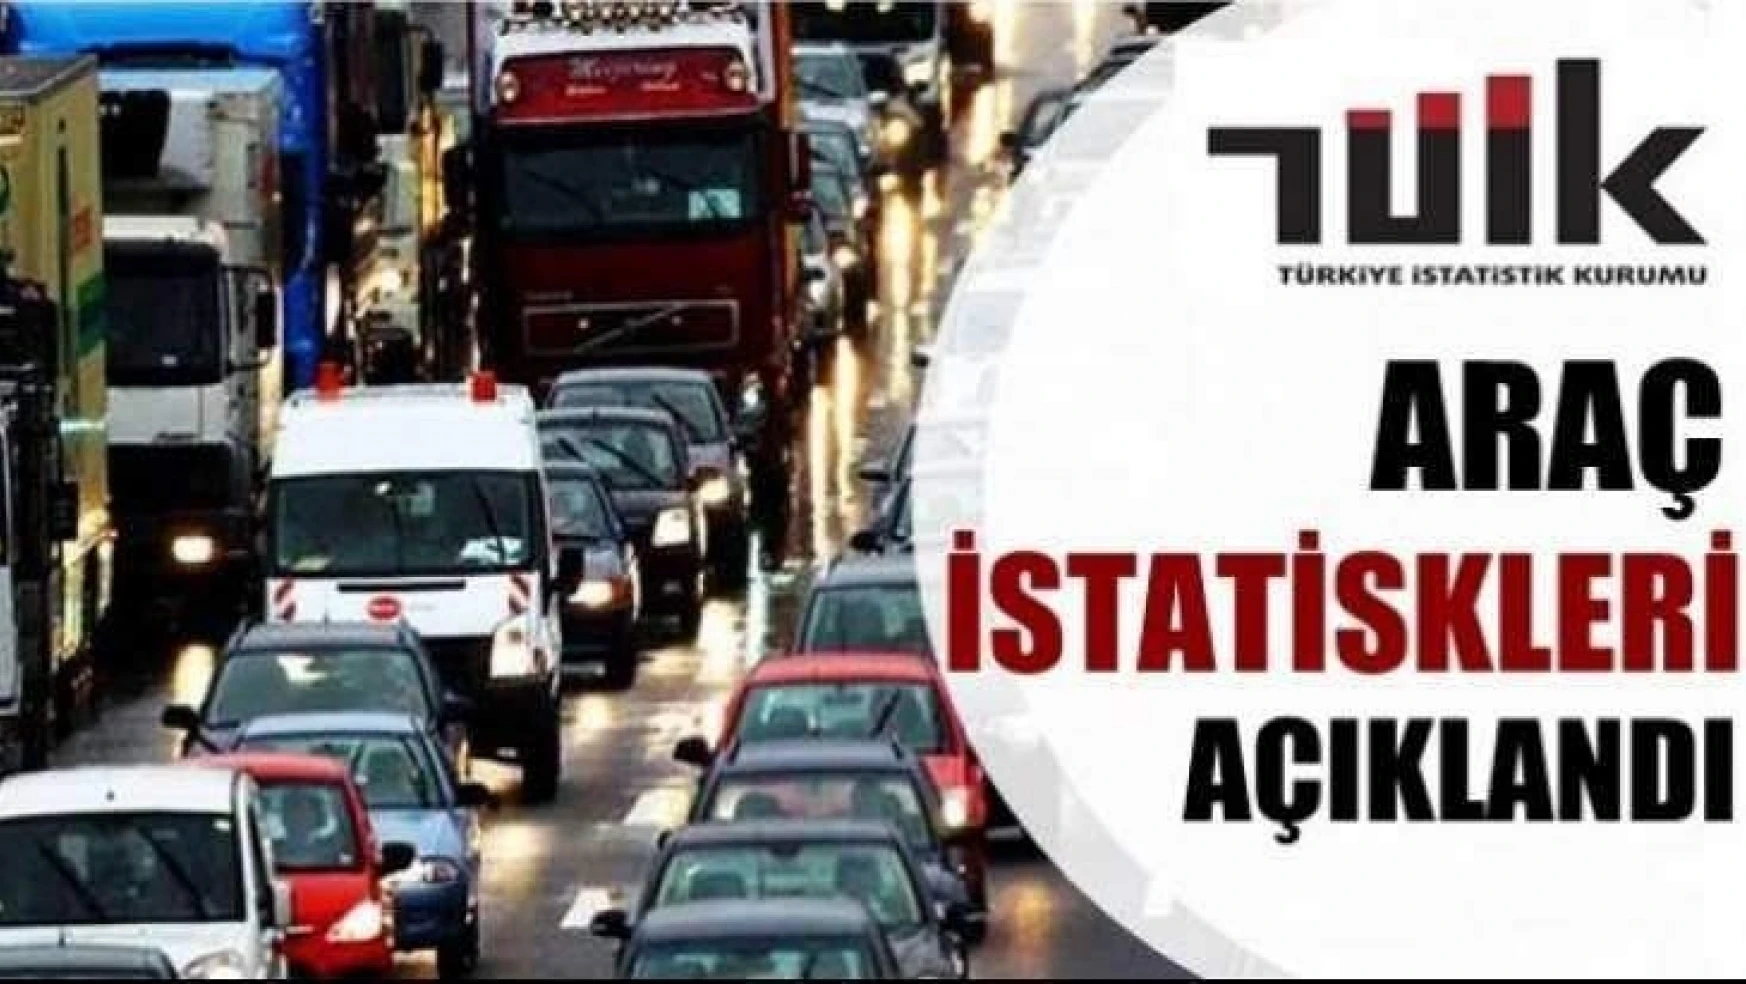 Malatya'da trafiğe kayıtlı araç sayısı Ocak ayı sonu itibarıyla 186 340 oldu.